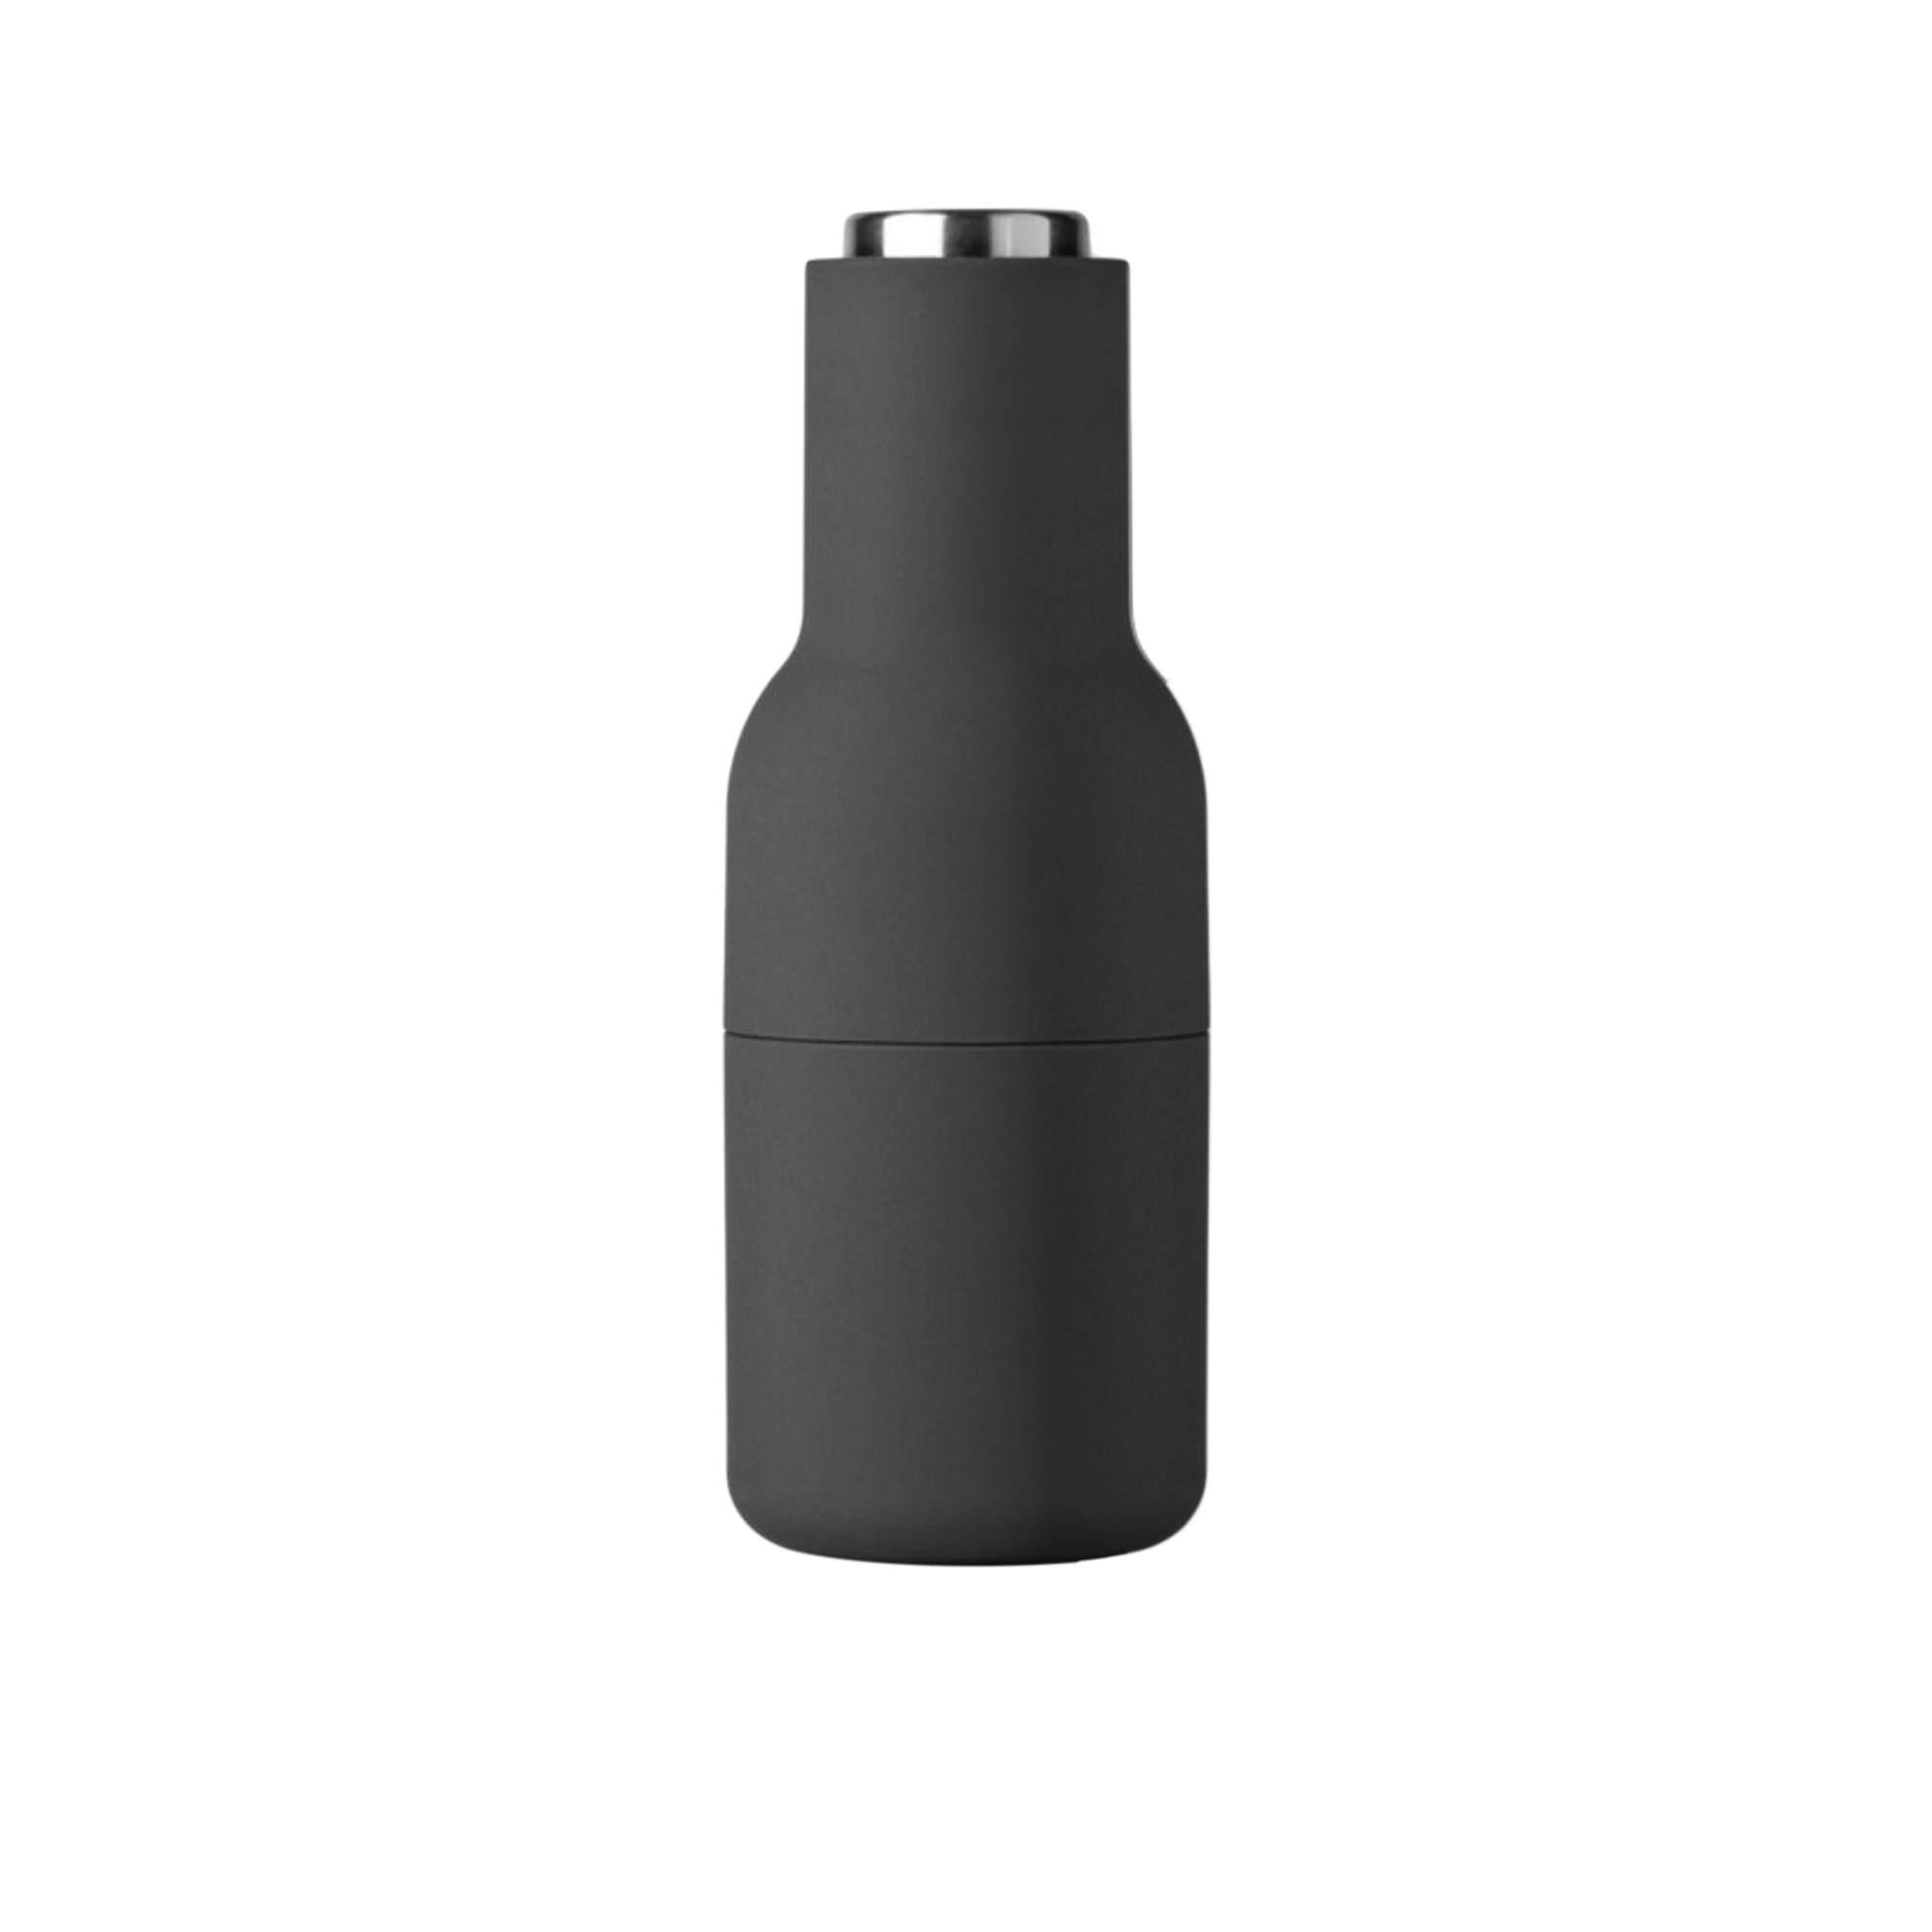 Menu Salt & Pepper Bottle Grinder with Steel Lid Set of 2 Ash Carbon Image 3